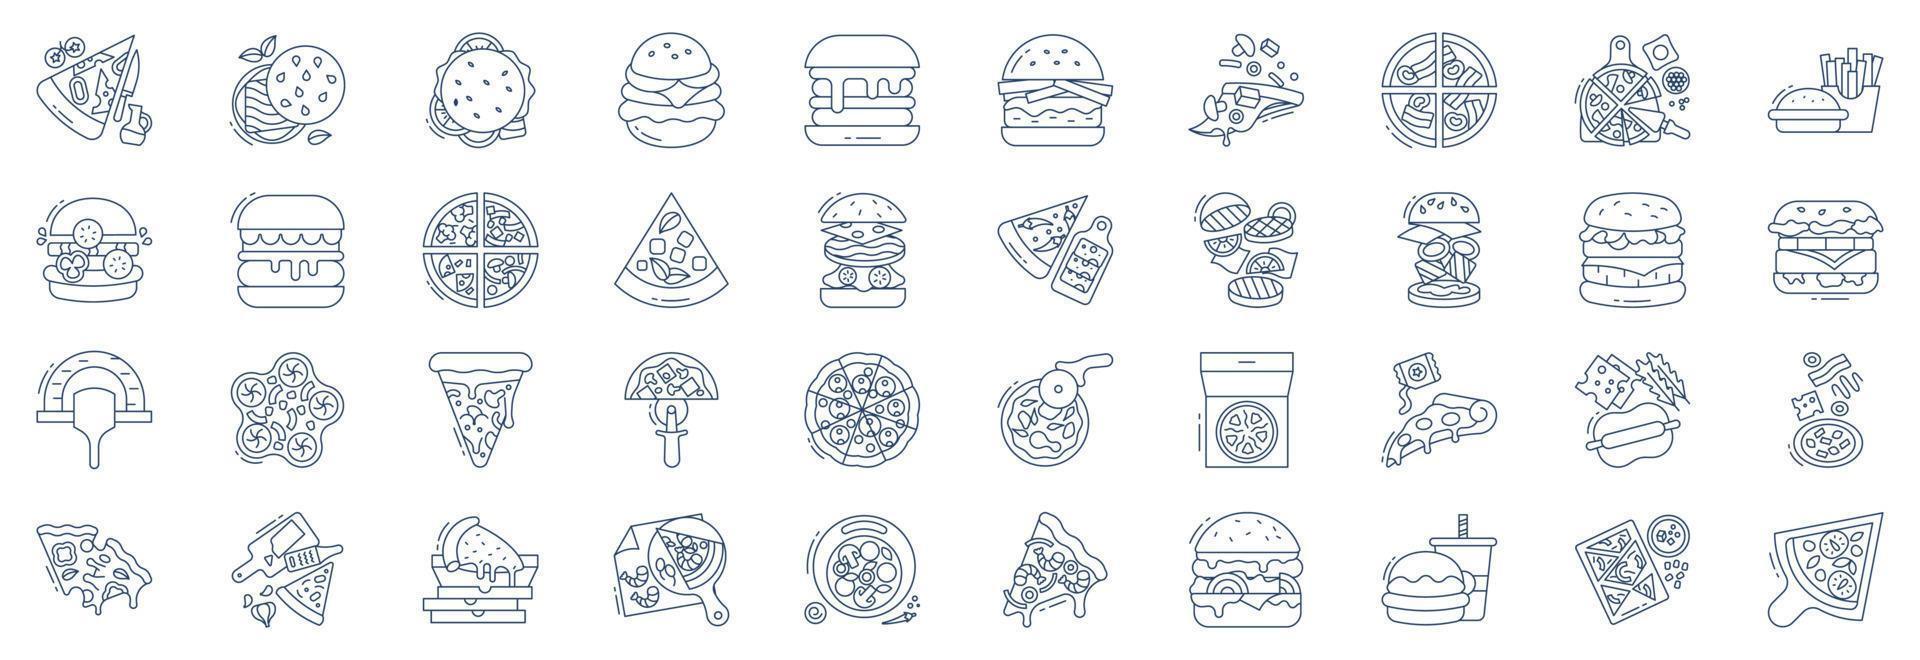 collection d'icônes liées à la pizza et au burger, y compris des icônes comme la pizza, les frites, le burger, les monos et plus encore. illustrations vectorielles, ensemble parfait de pixels vecteur